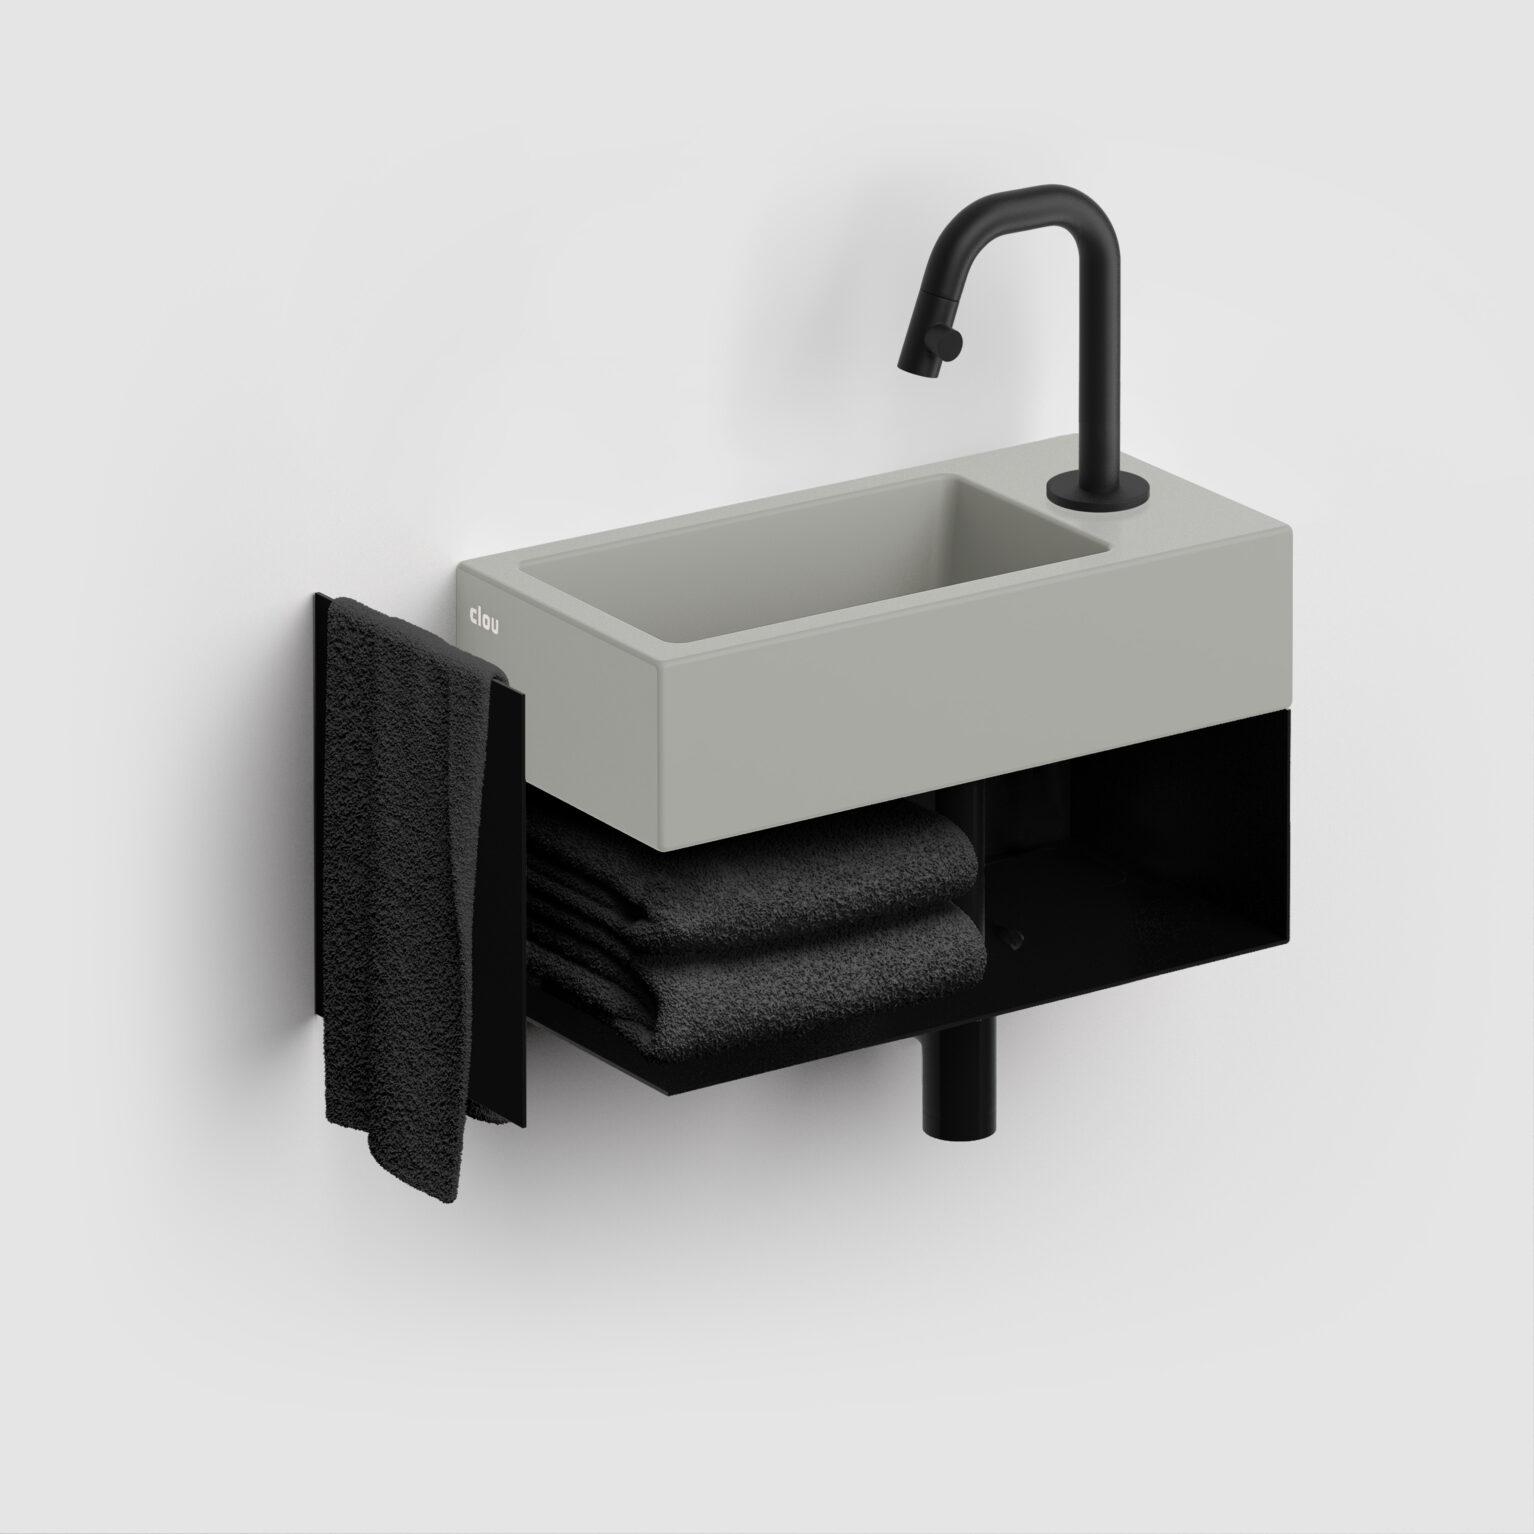 fontein-meubel-kastje-toilet-badkamer-luxe-sanitair-InBe-rechts-clou-CL073603021-staal-mat-zwart-36cm-opbergruimte-plankje-deur-fontein-Flush3-mat-grijs-CL0332030-Kaldur-koudwater-kraan-mat-zwart-CL060500421R-MiniSuk-sifon-CL065301121